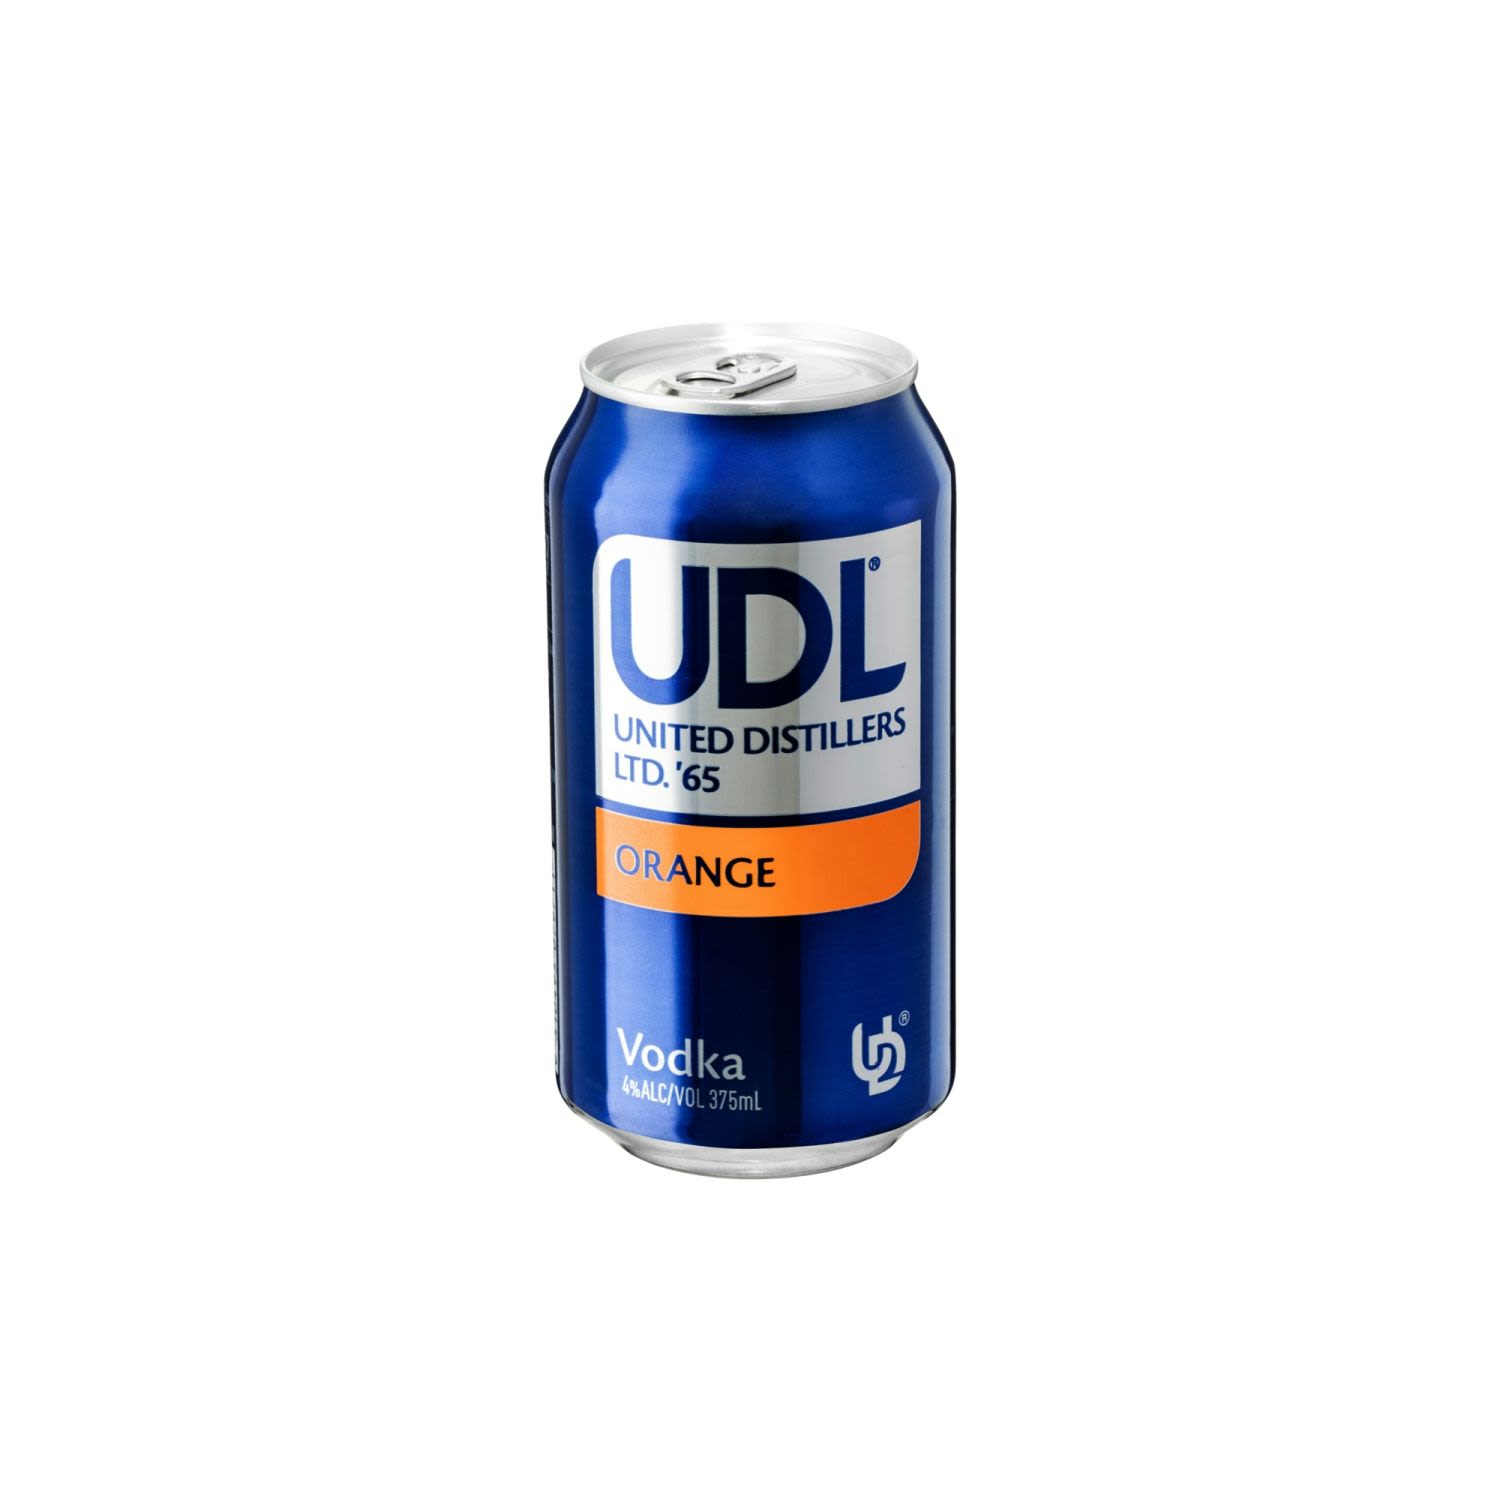 UDL Vodka and Orange Cans 375mL<br /> <br />Alcohol Volume: 4.00%<br /><br />Pack Format: Can<br /><br />Standard Drinks: 1.3</br /><br />Pack Type: Can<br />